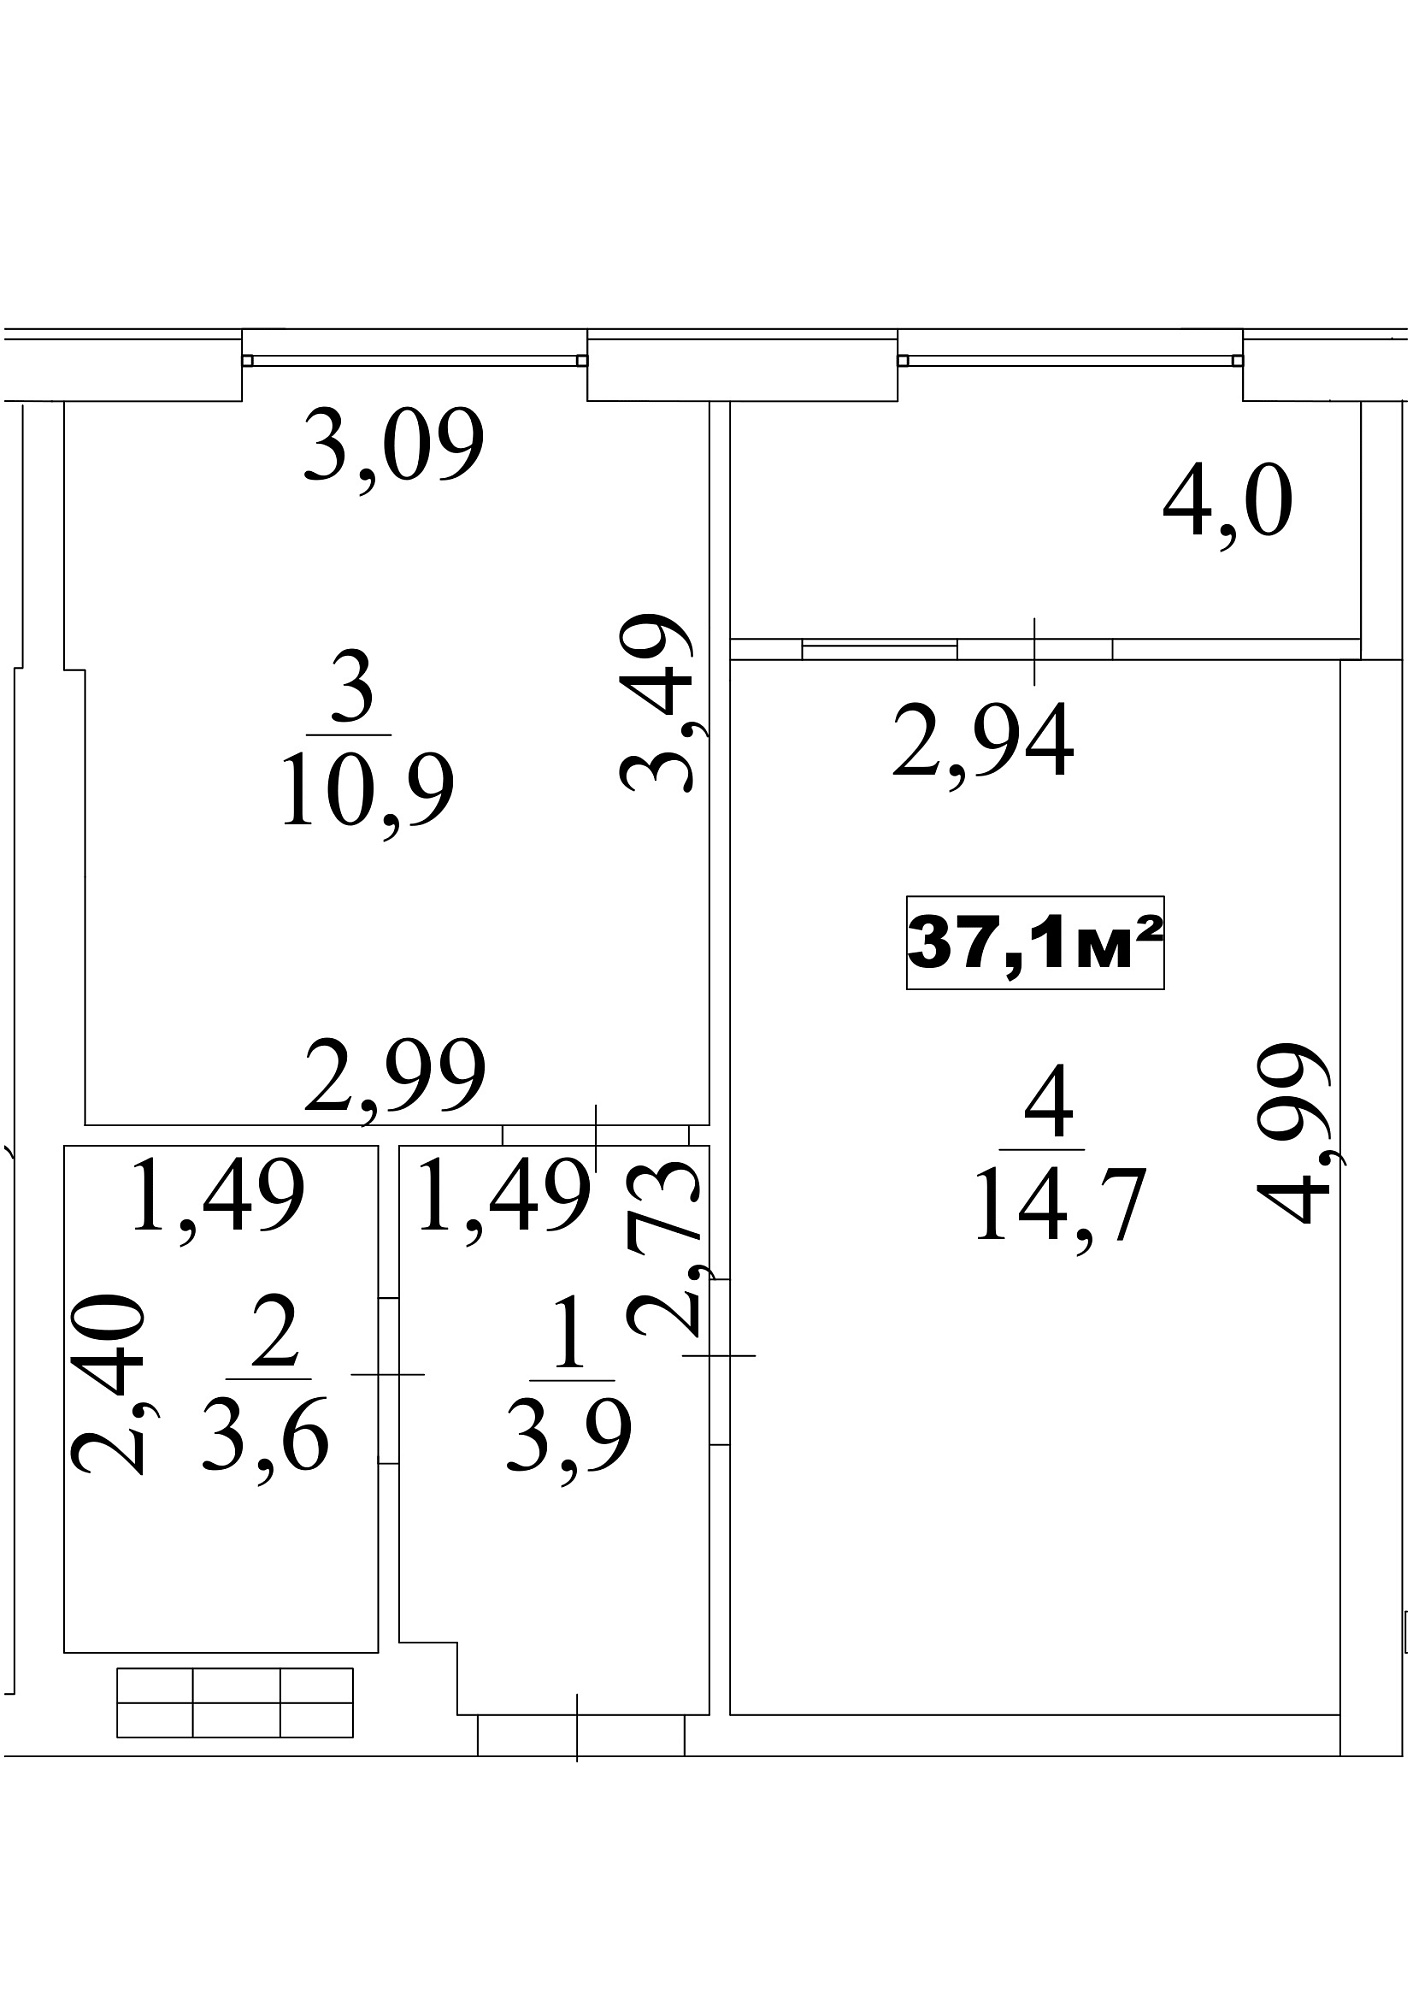 Планування 1-к квартира площею 37.1м2, AB-10-03/0025а.